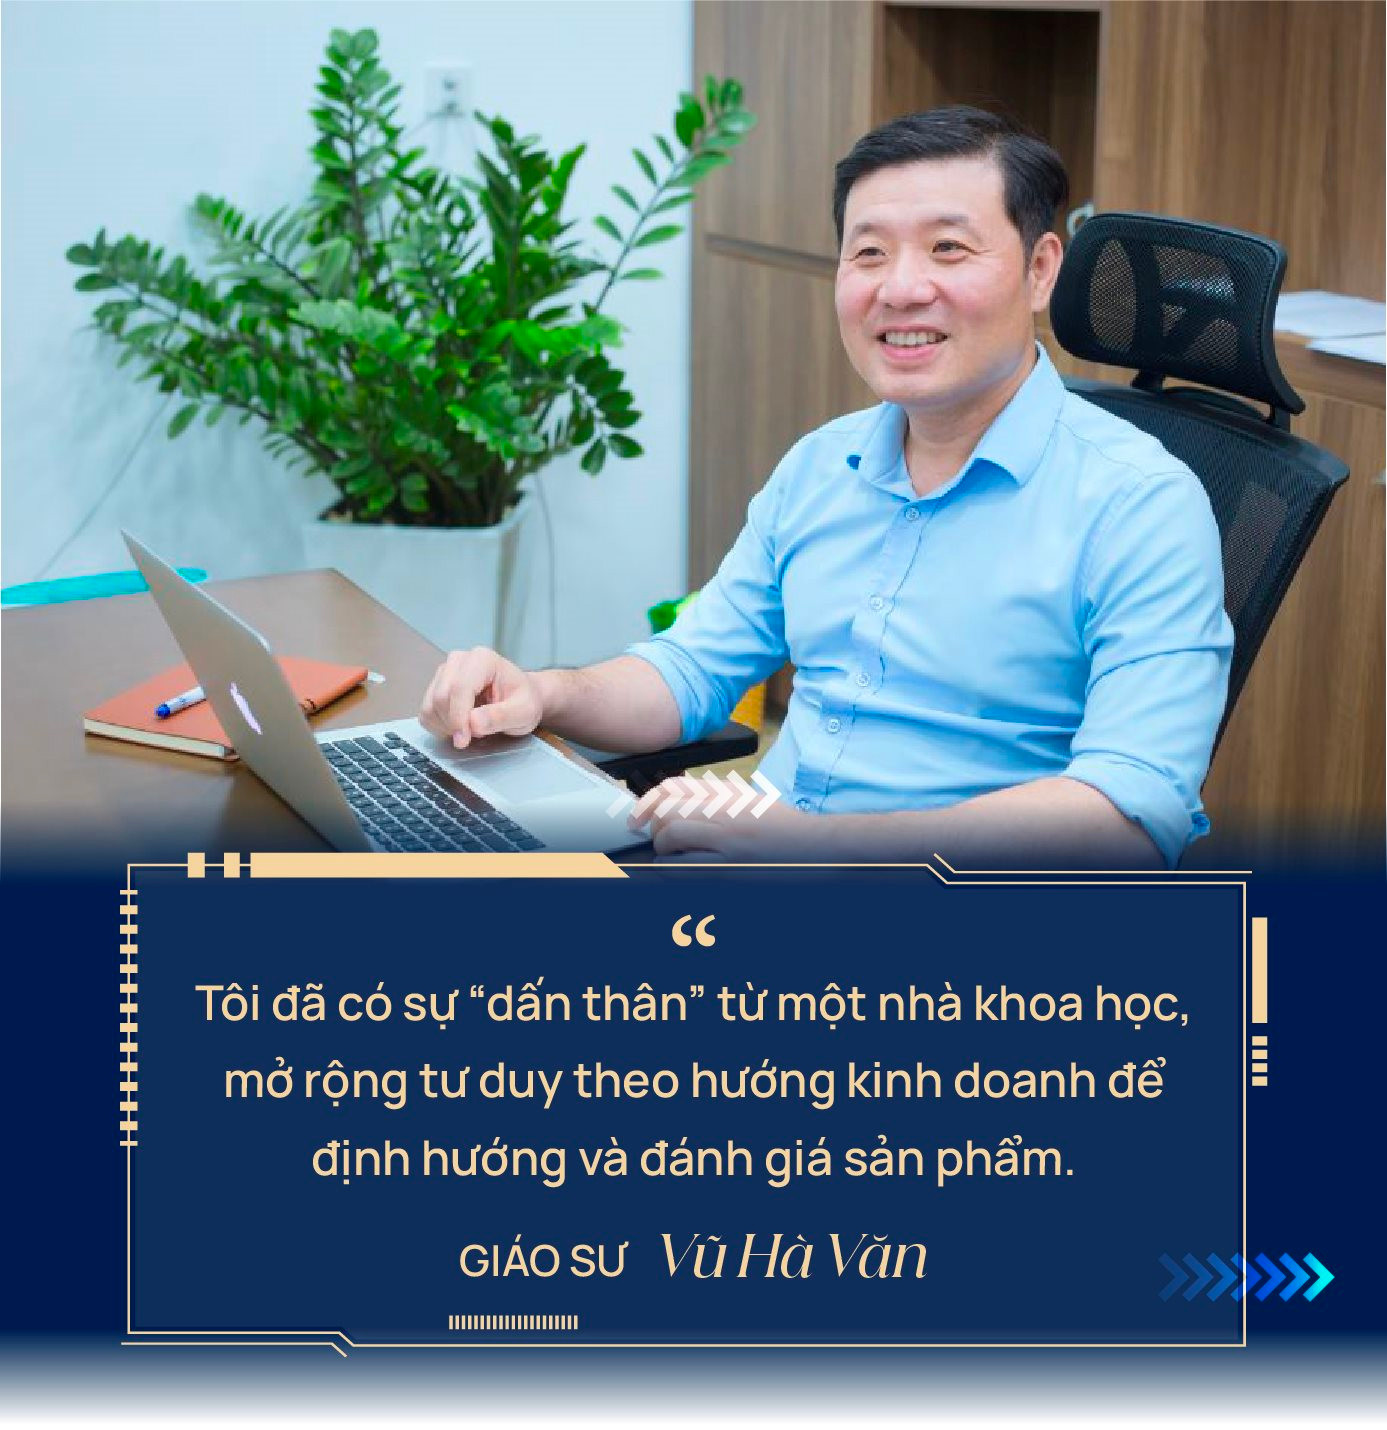 Giáo sư Vũ Hà Văn: Nhà toán học đi làm kinh doanh, xây ViGPT ‘không phải phép màu’ nhưng bài bản, nghiêm túc từ gốc rễ - Ảnh 9.